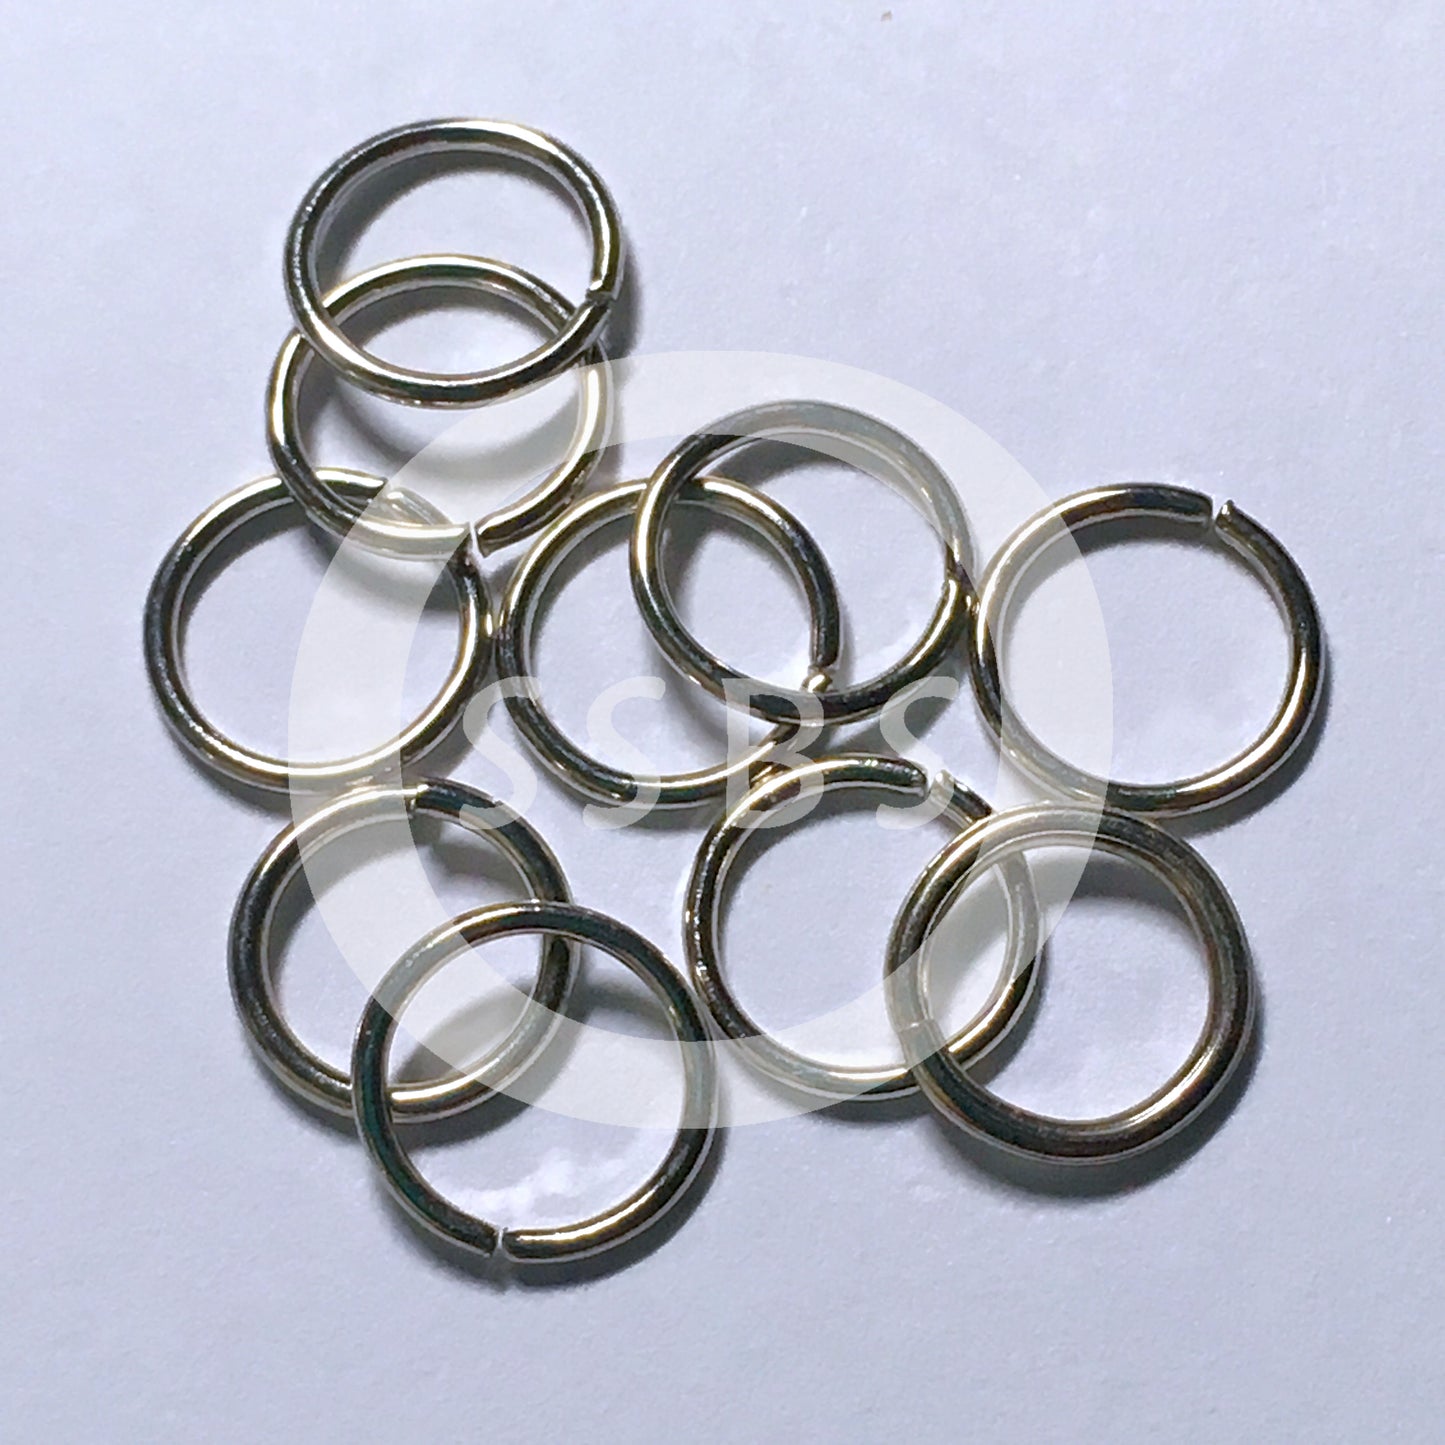 8 mm 20-Gauge Stainless Steel Unsoldered .8 mm Split Jump Rings - 10 or 20 Rings